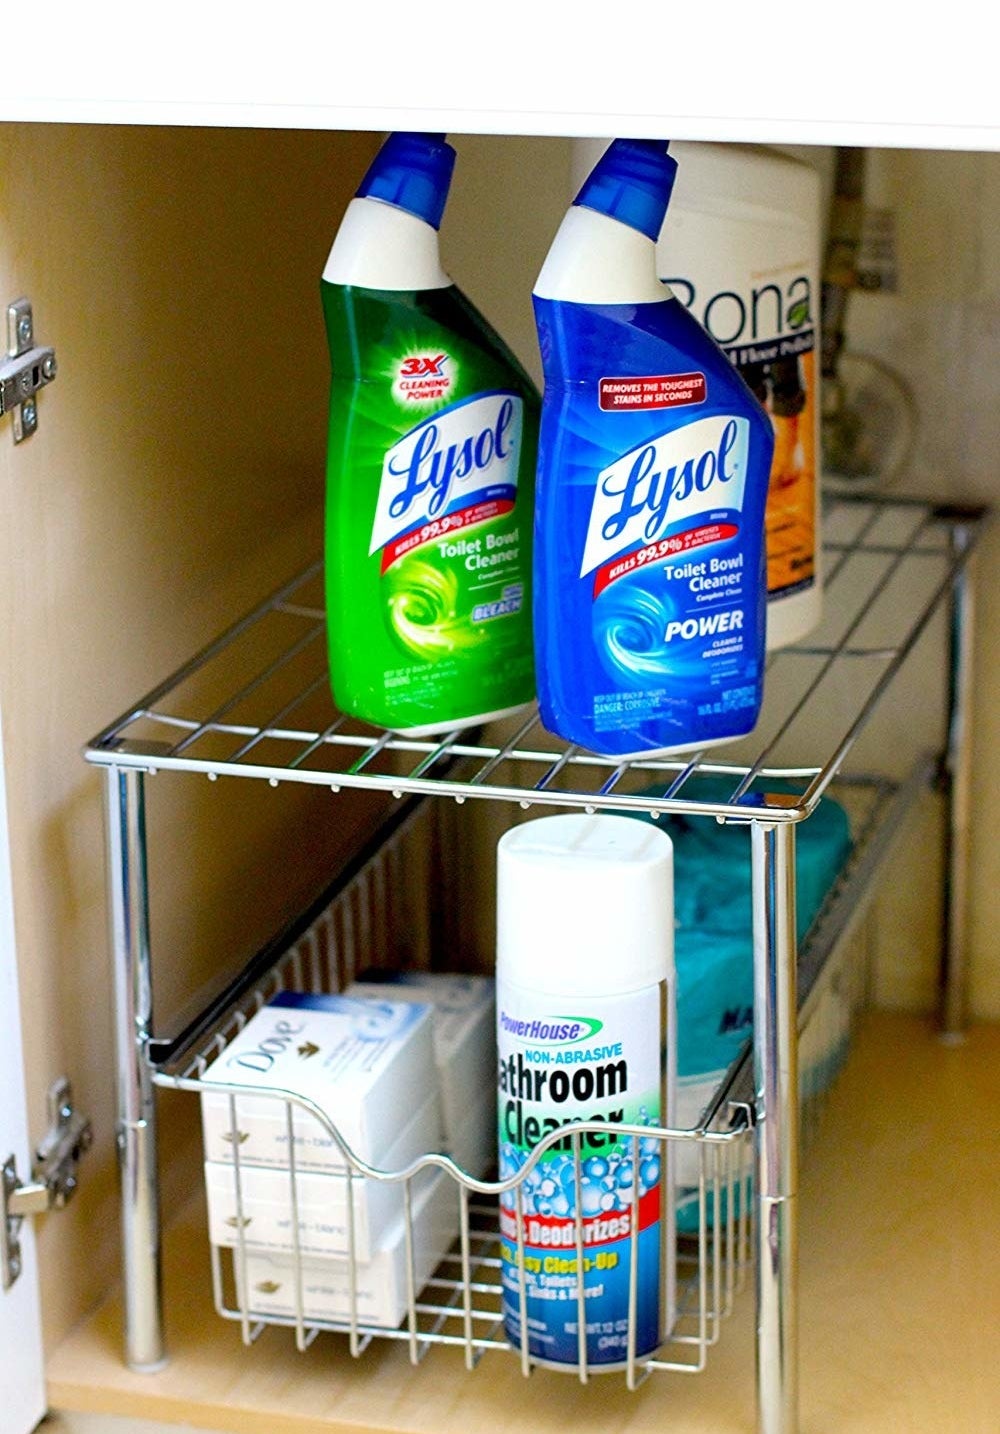 26 Easy Storage Ideas for Organizing Your Bathroom